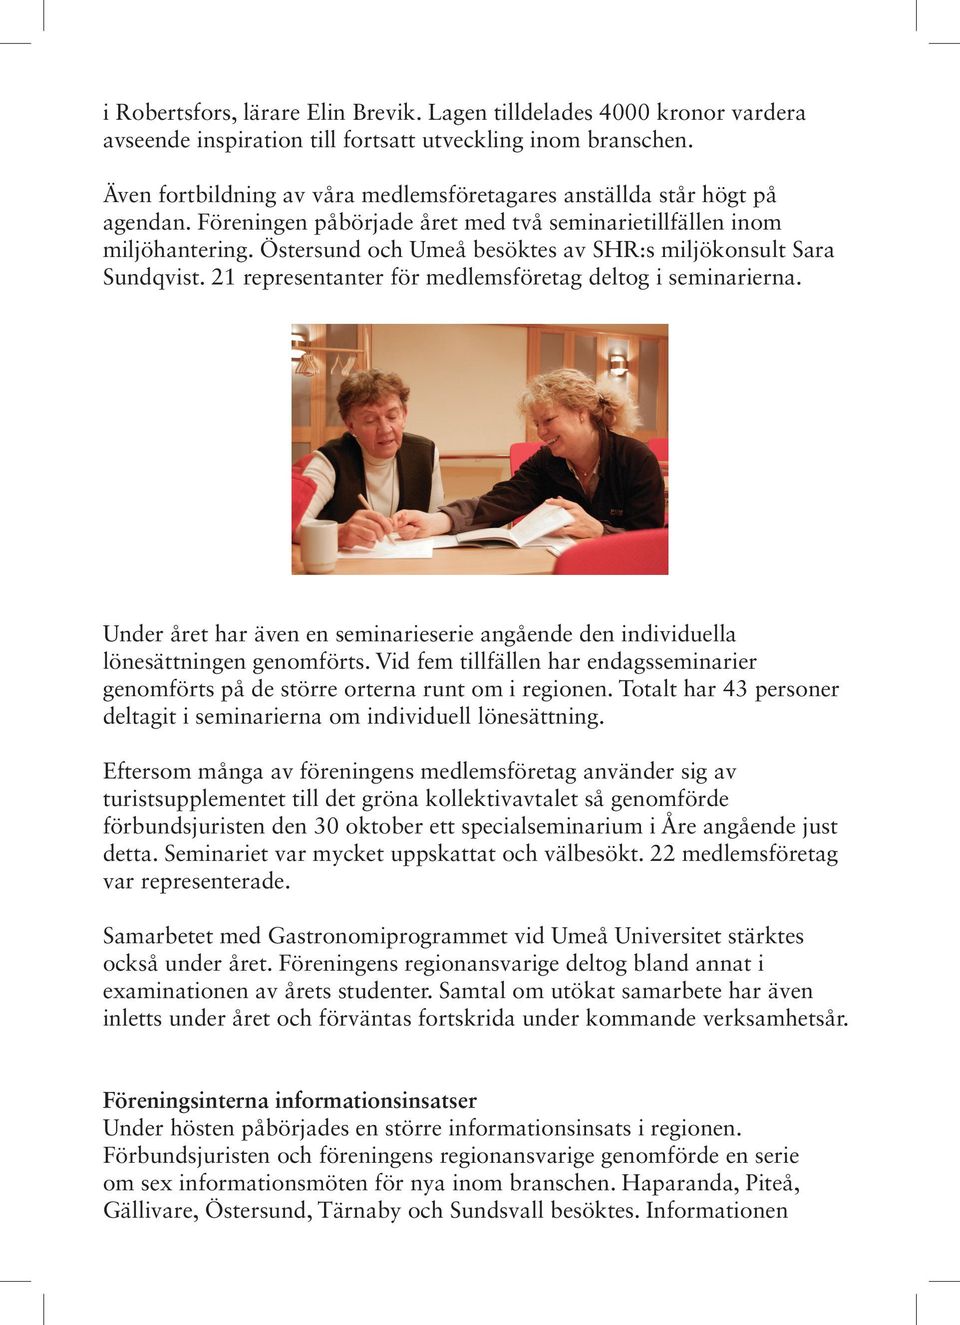 Östersund och Umeå besöktes av SHR:s miljökonsult Sara Sundqvist. 21 representanter för medlemsföretag deltog i seminarierna.